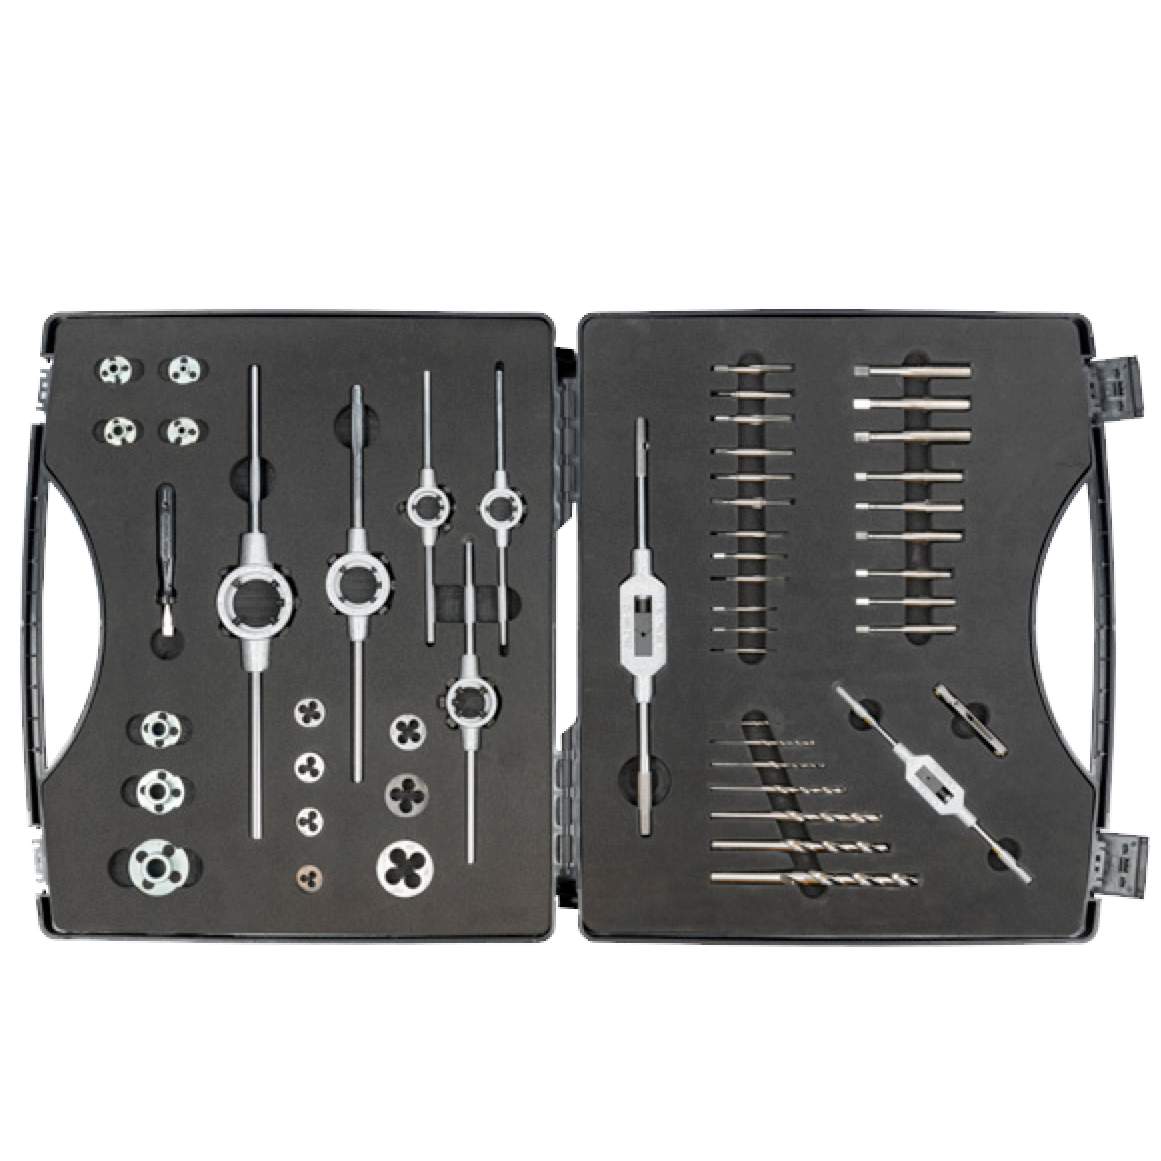 ELORA 1363-S Thread Cutter Set Assortment (ELORA Tools) - Premium Thread Cutter Set from ELORA - Shop now at Yew Aik.